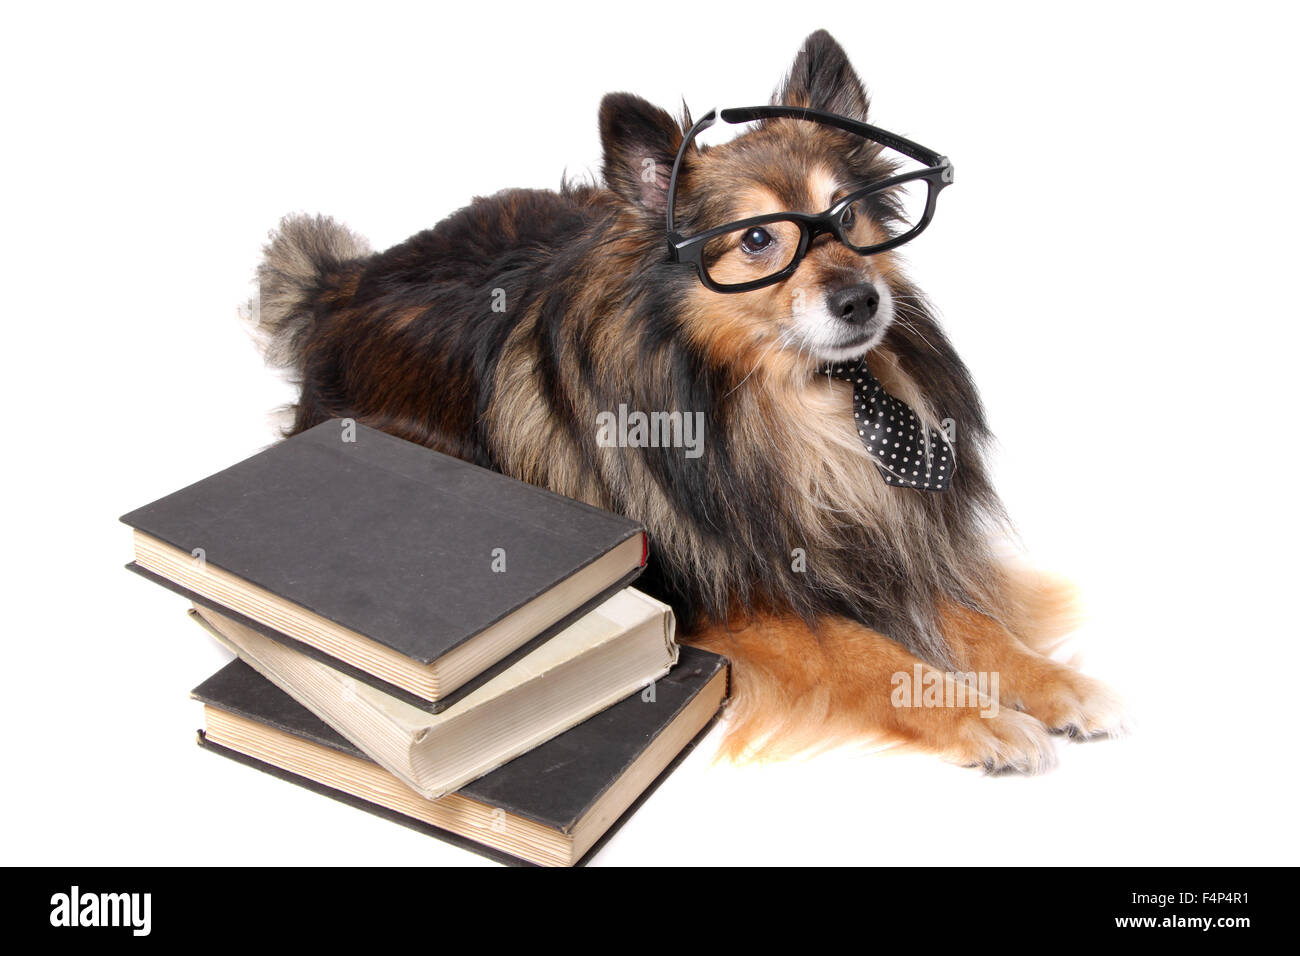 Sheltie oder Shetland Sheepdog trägt eine Krawatte und schwarz gerahmte Brille, die Verlegung durch einen Stapel Bücher, tierische Bildungskonzept Stockfoto